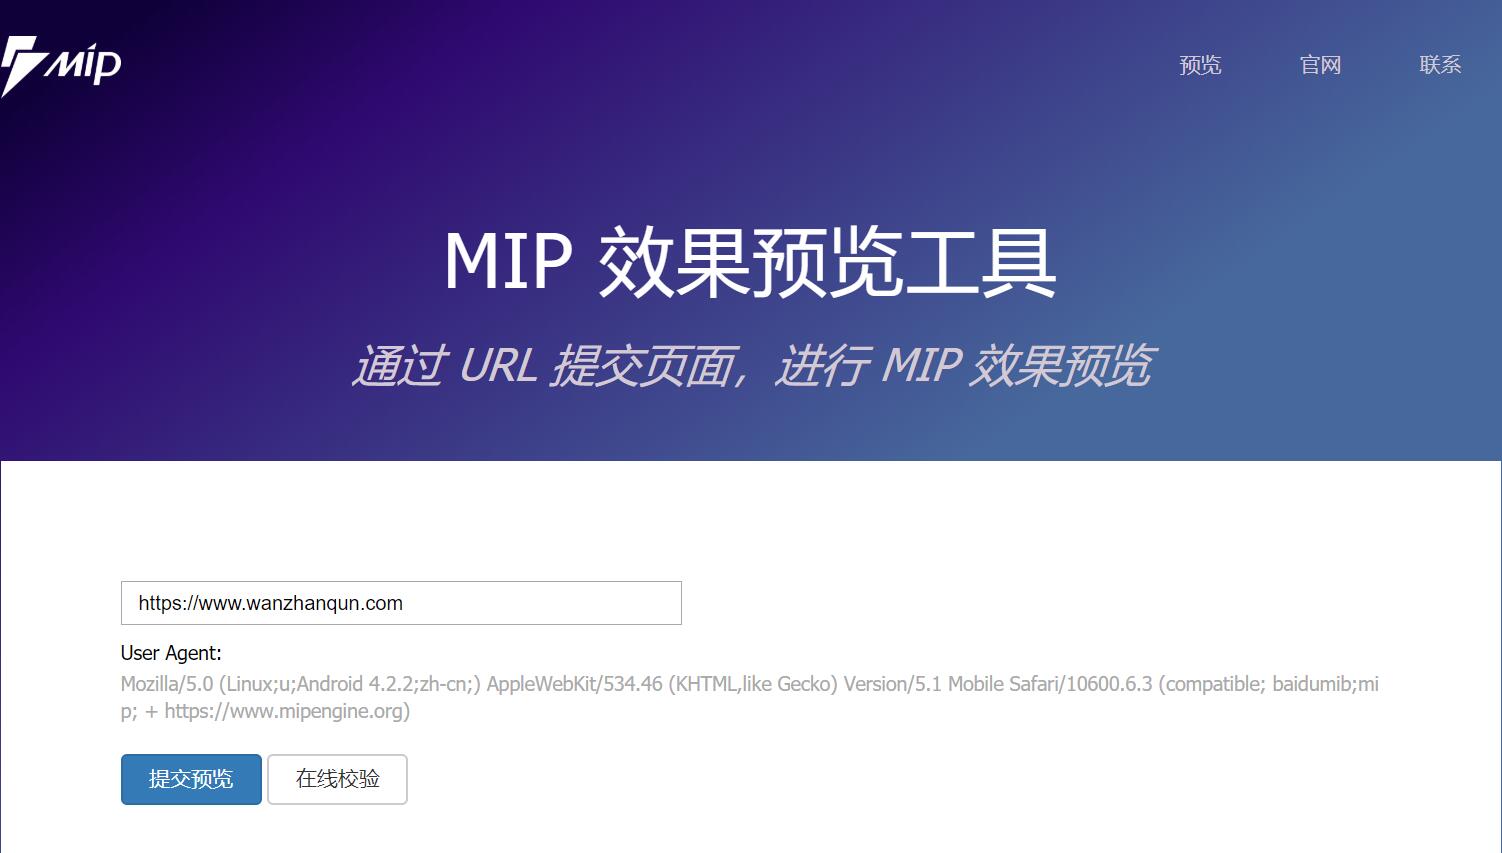 MIP技术效果预览工具